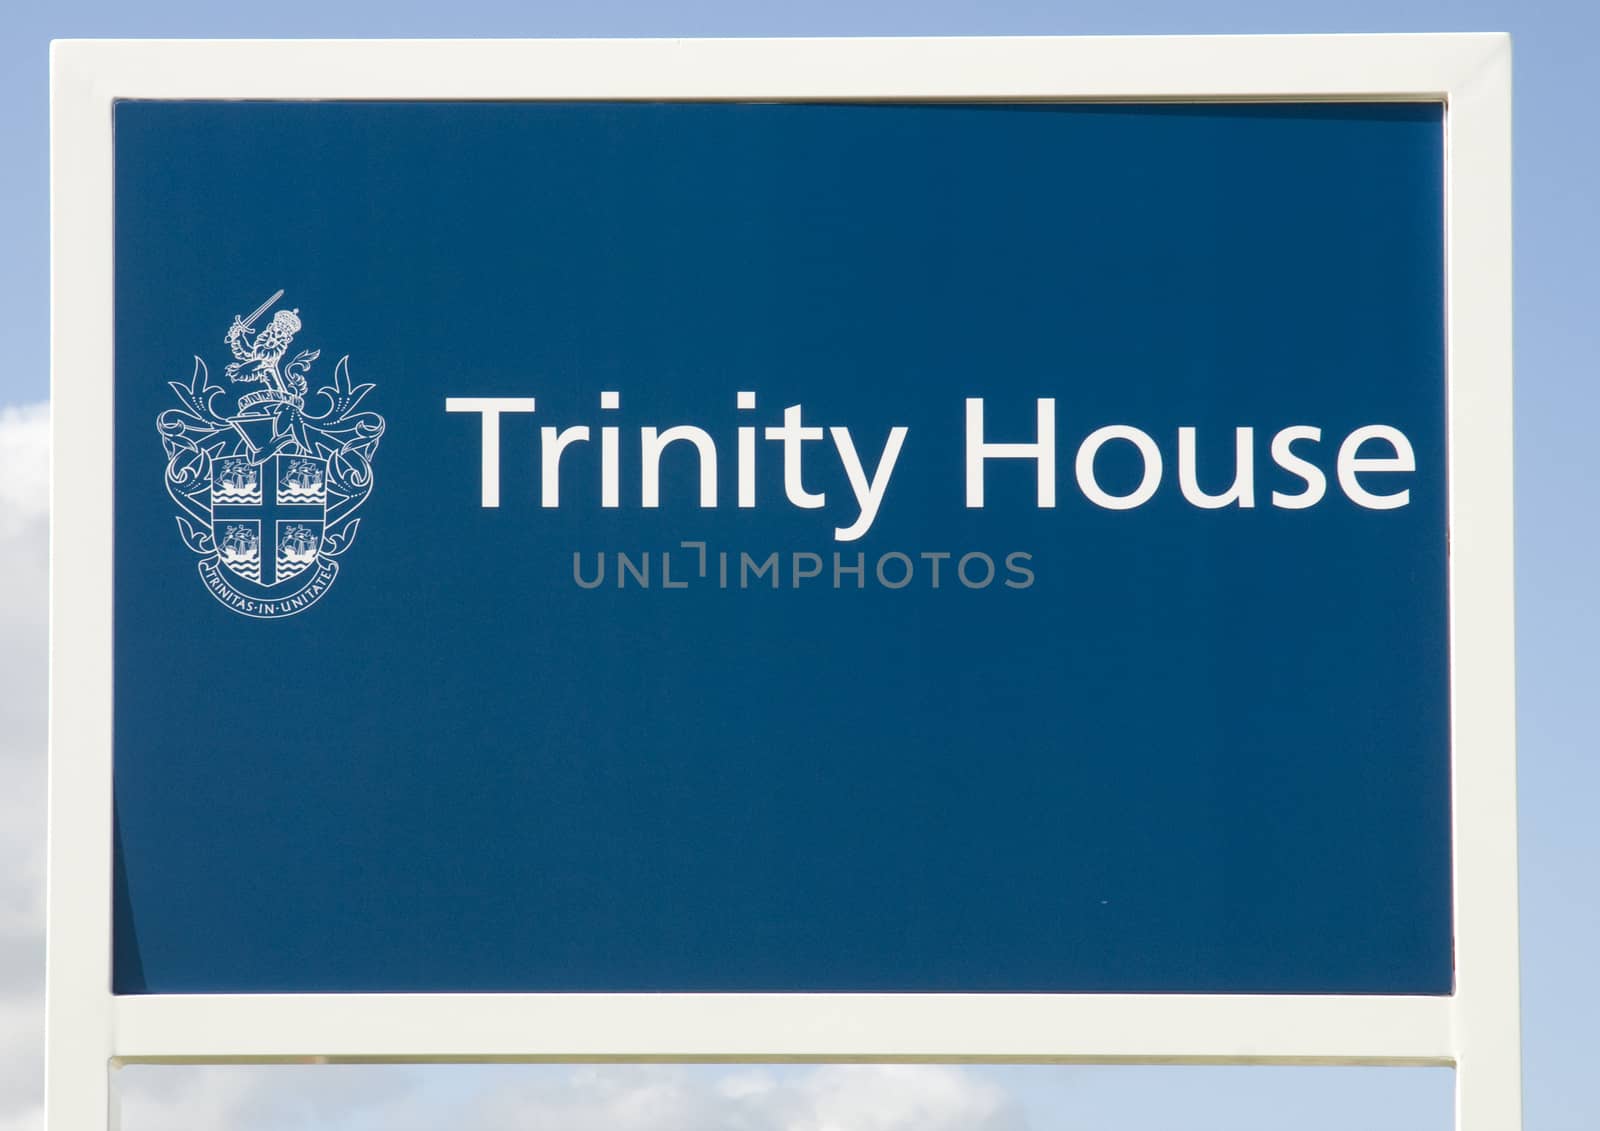 The Trinity House sign - Lighthouse